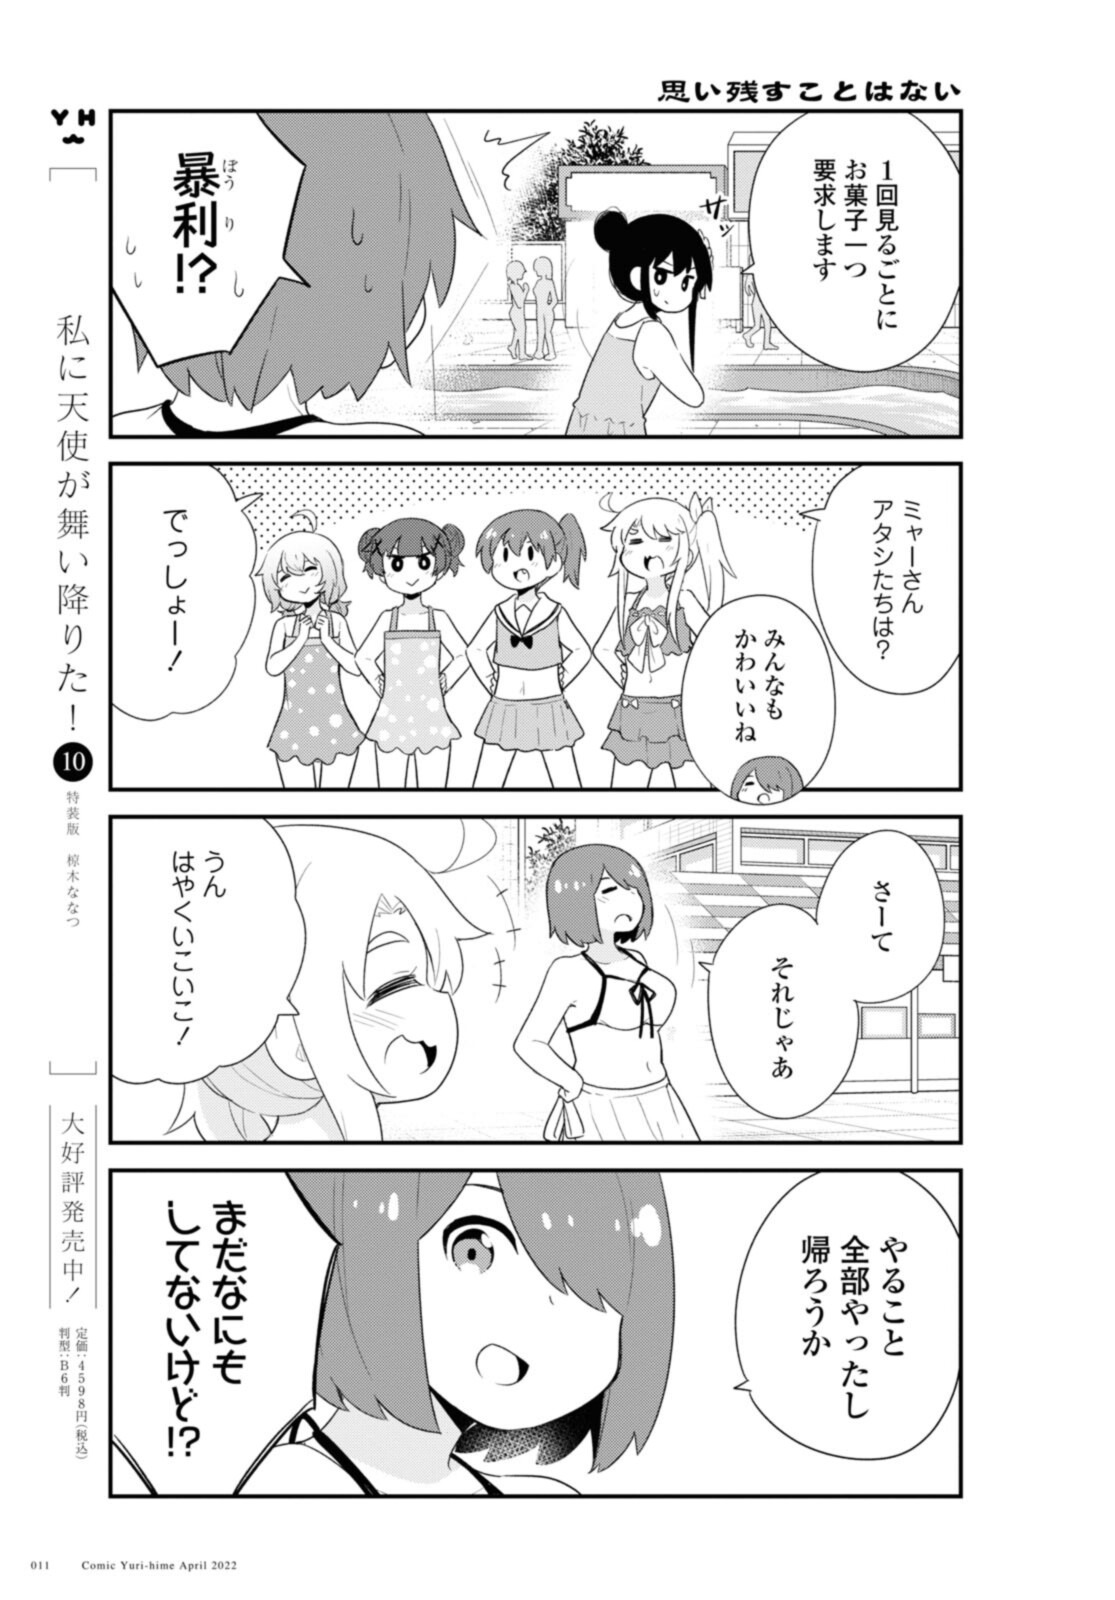 Watashi ni Tenshi ga Maiorita! - Chapter 94.1 - Page 7